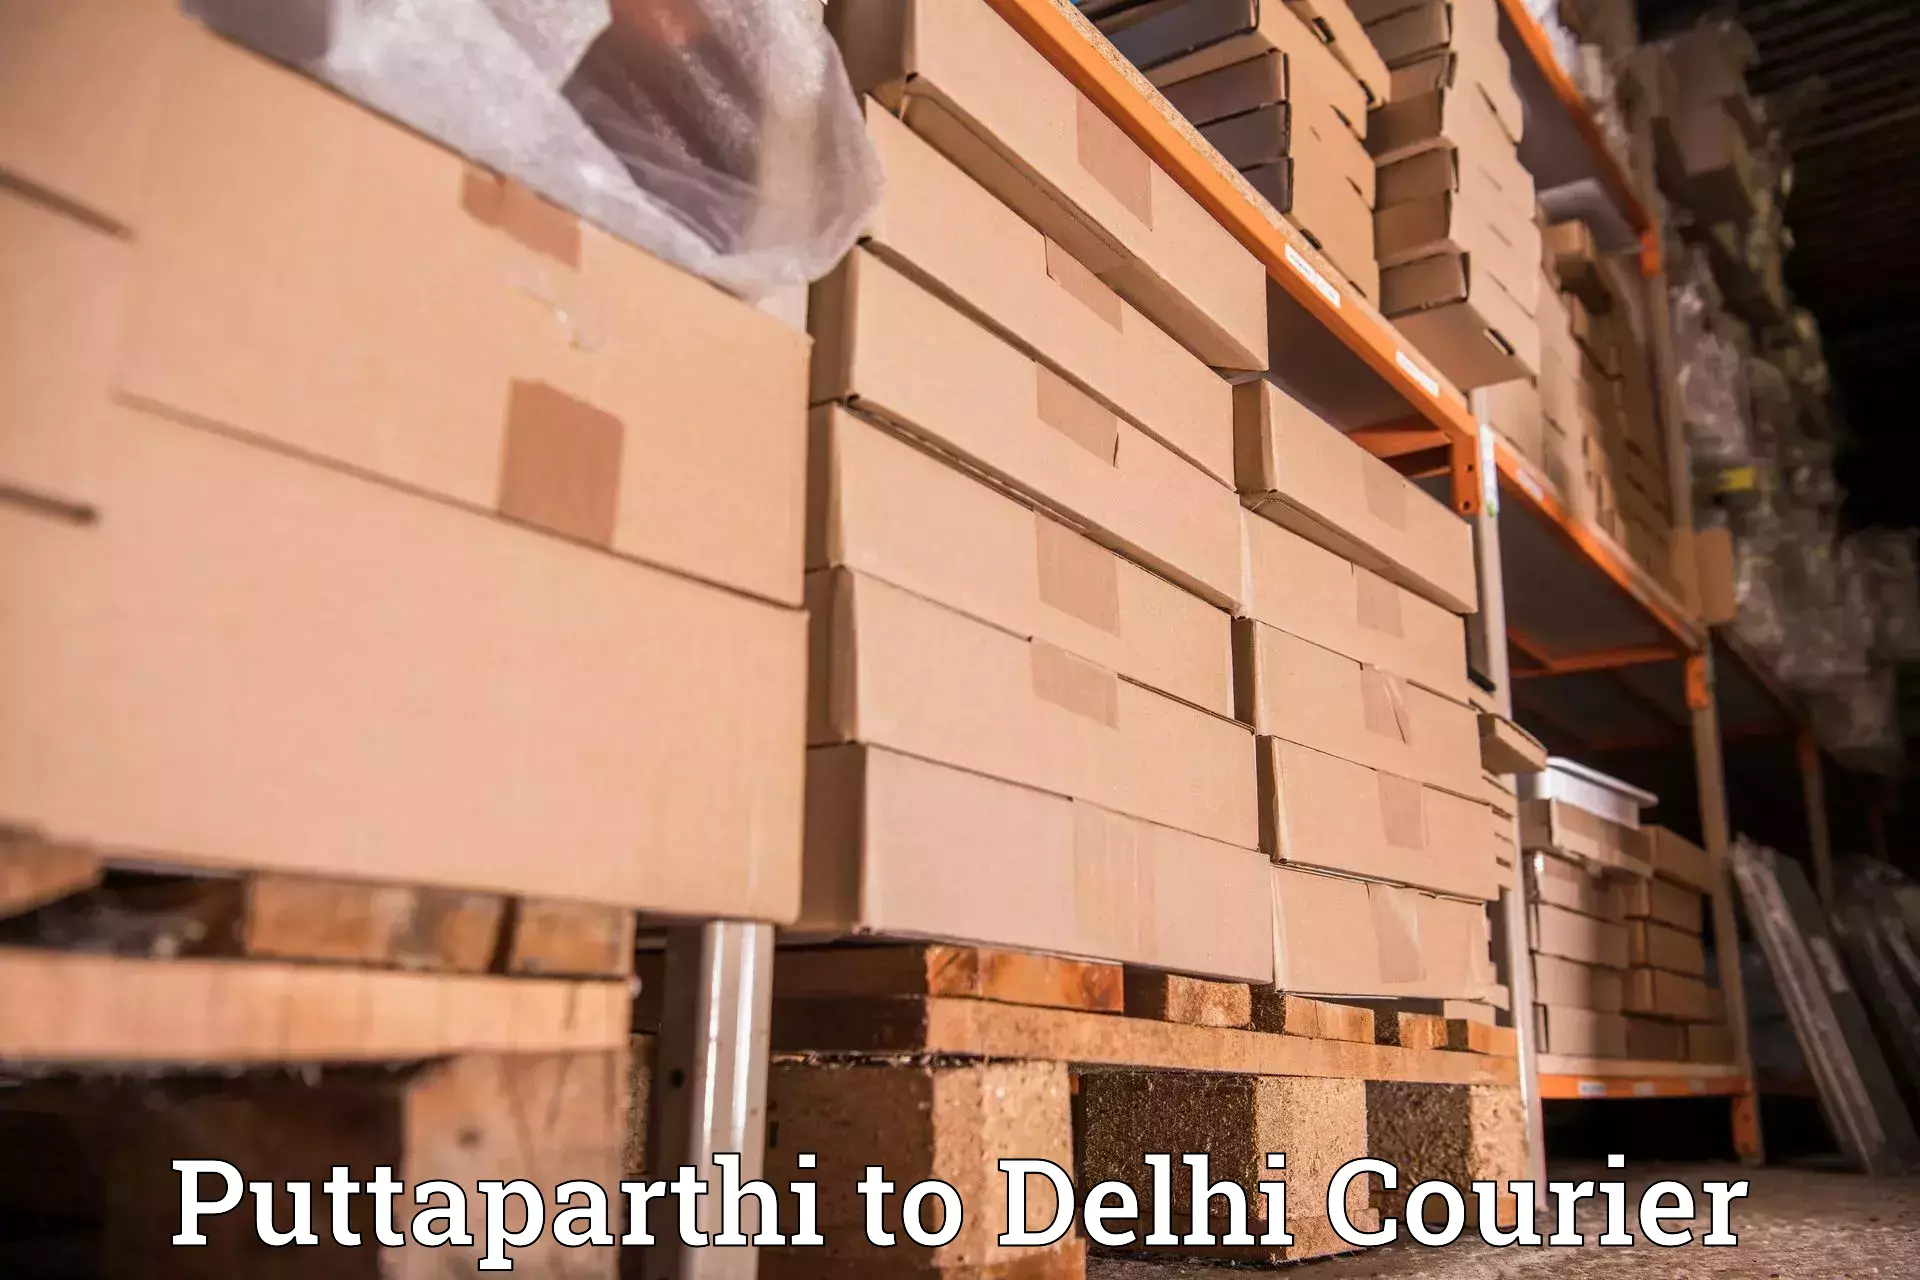 High-speed delivery Puttaparthi to Jamia Millia Islamia New Delhi